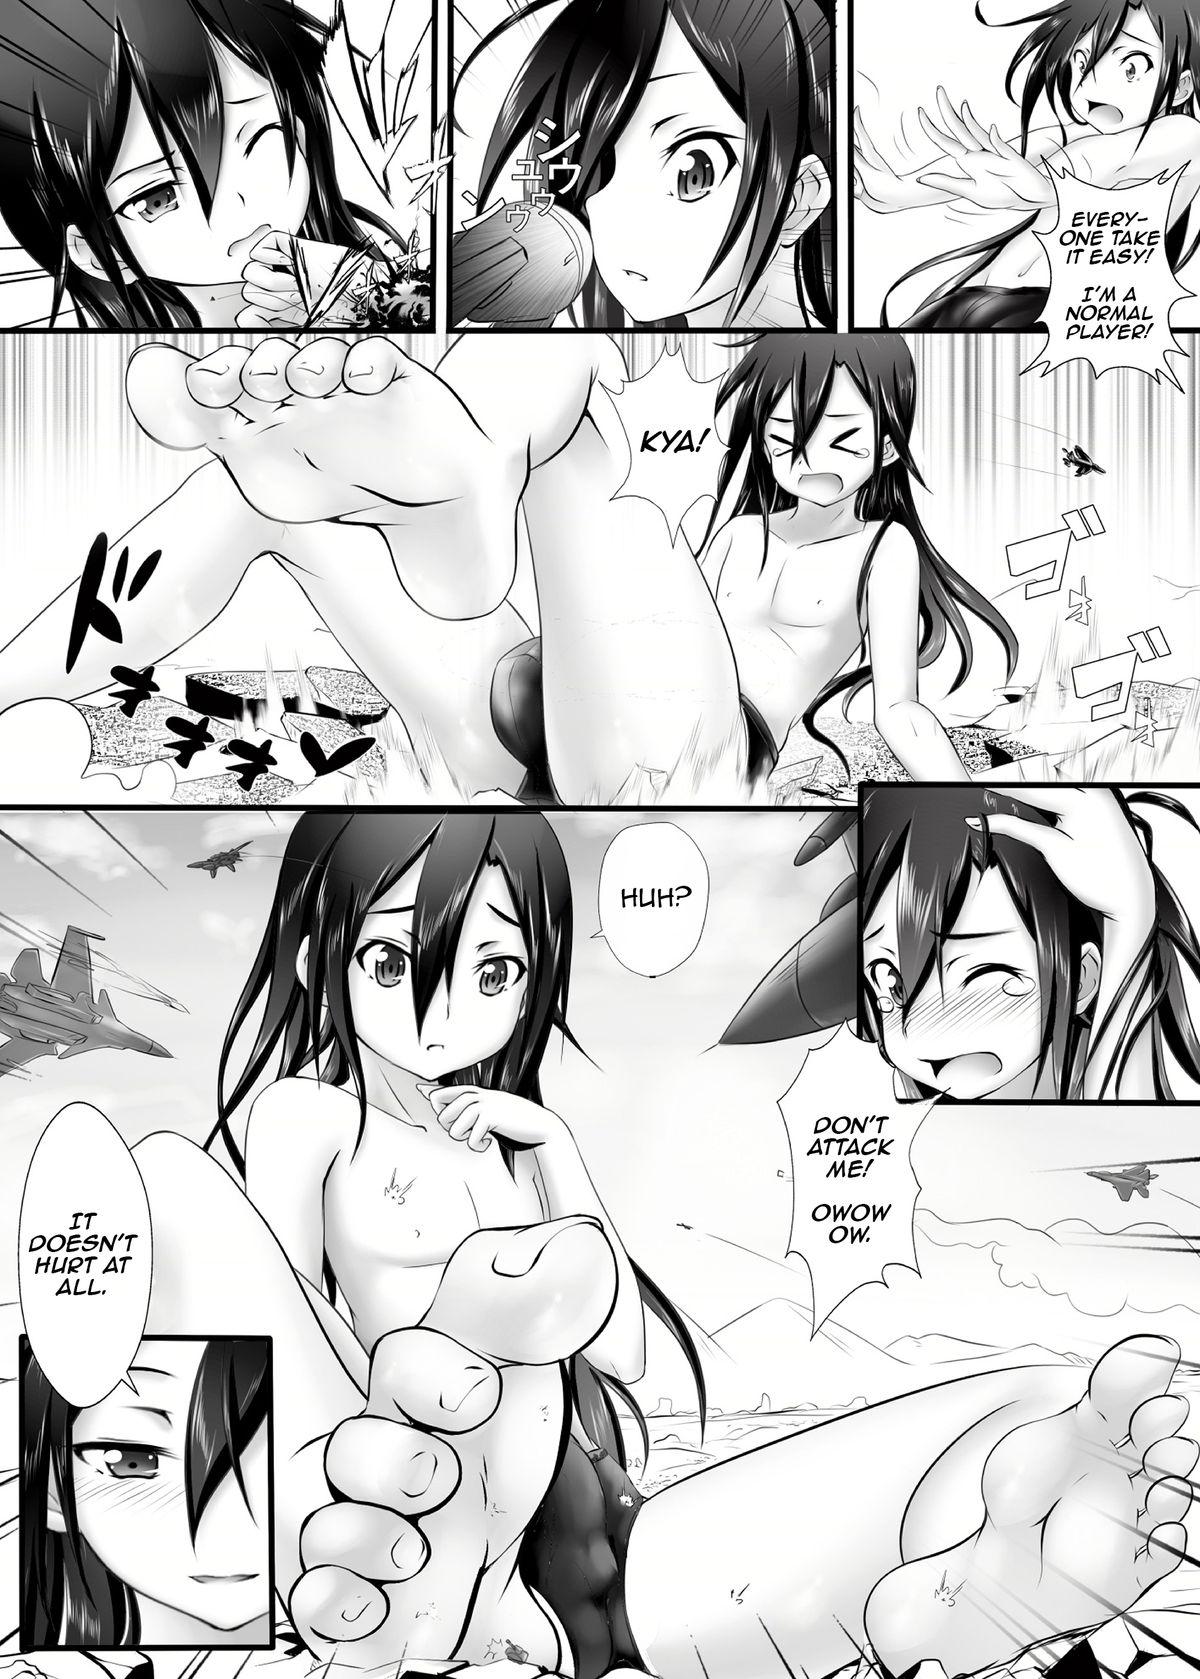 Cam Sex BUG ART ONLINE 1.5 Game Time - Sword art online Striptease - Page 6